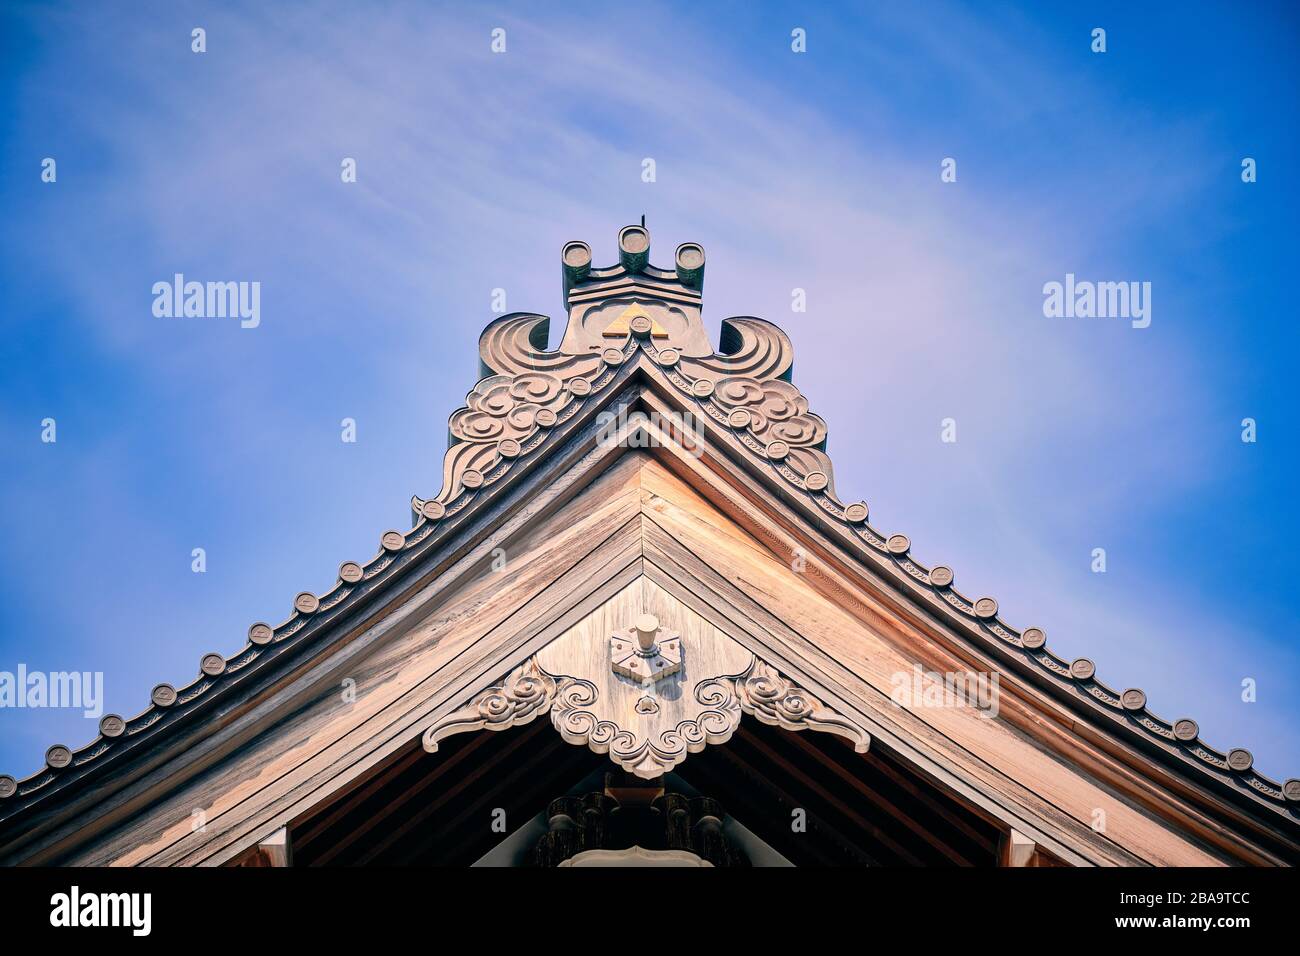 Dettagli sul tetto di un tradizionale edificio in legno al Tempio Kenchoji Zen Foto Stock